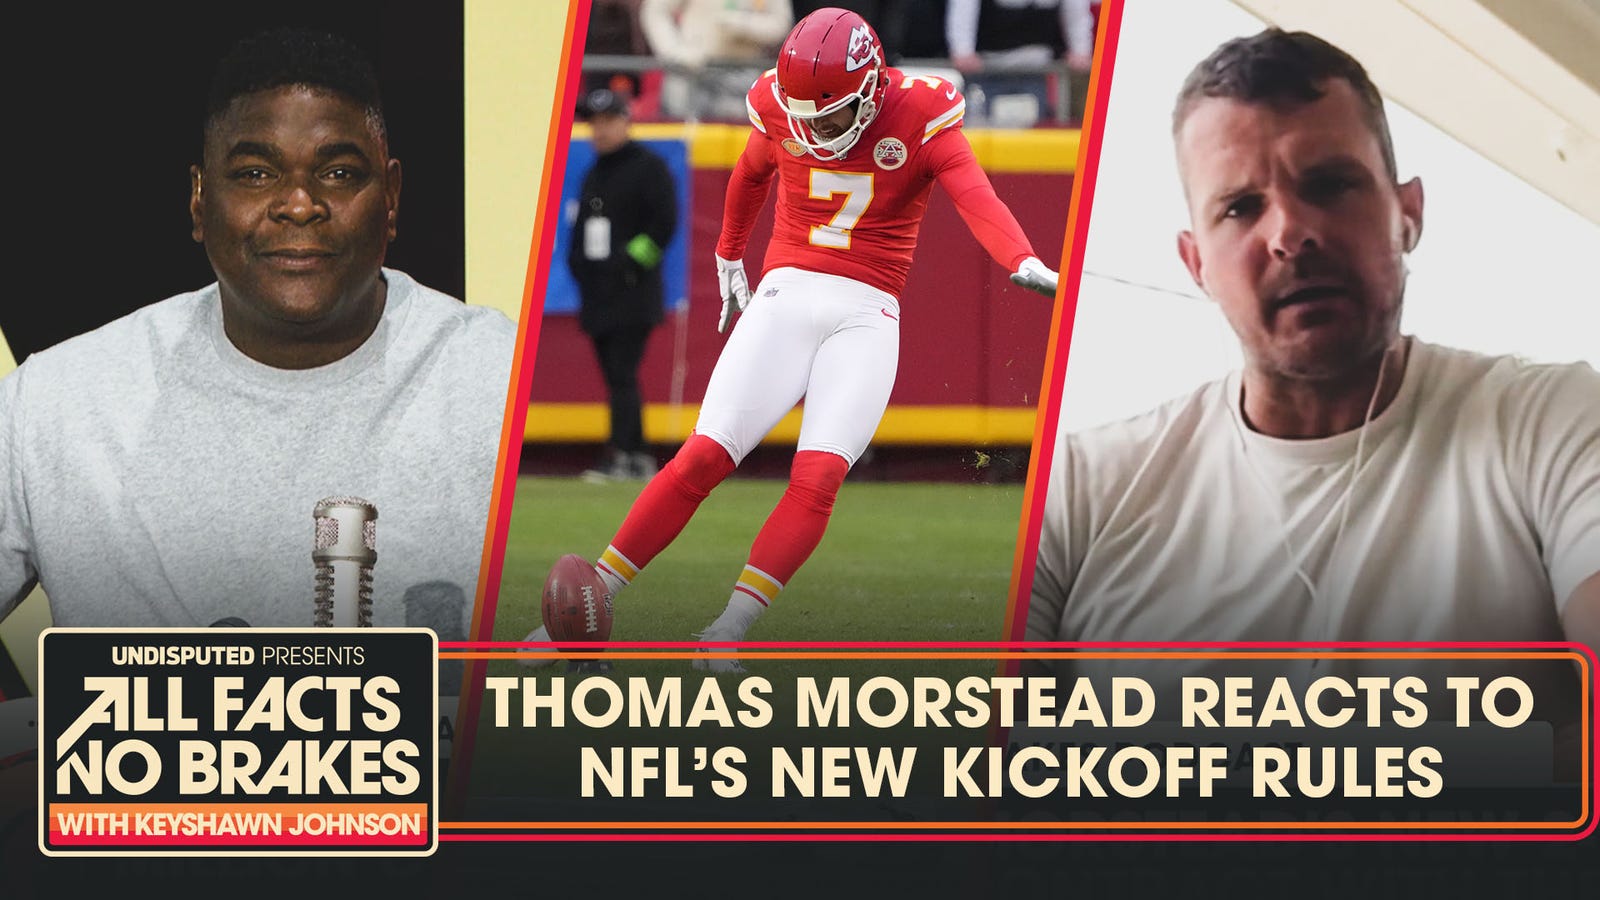 Veteran NFL punter Thomas Morstead reacts to new kickoff rules